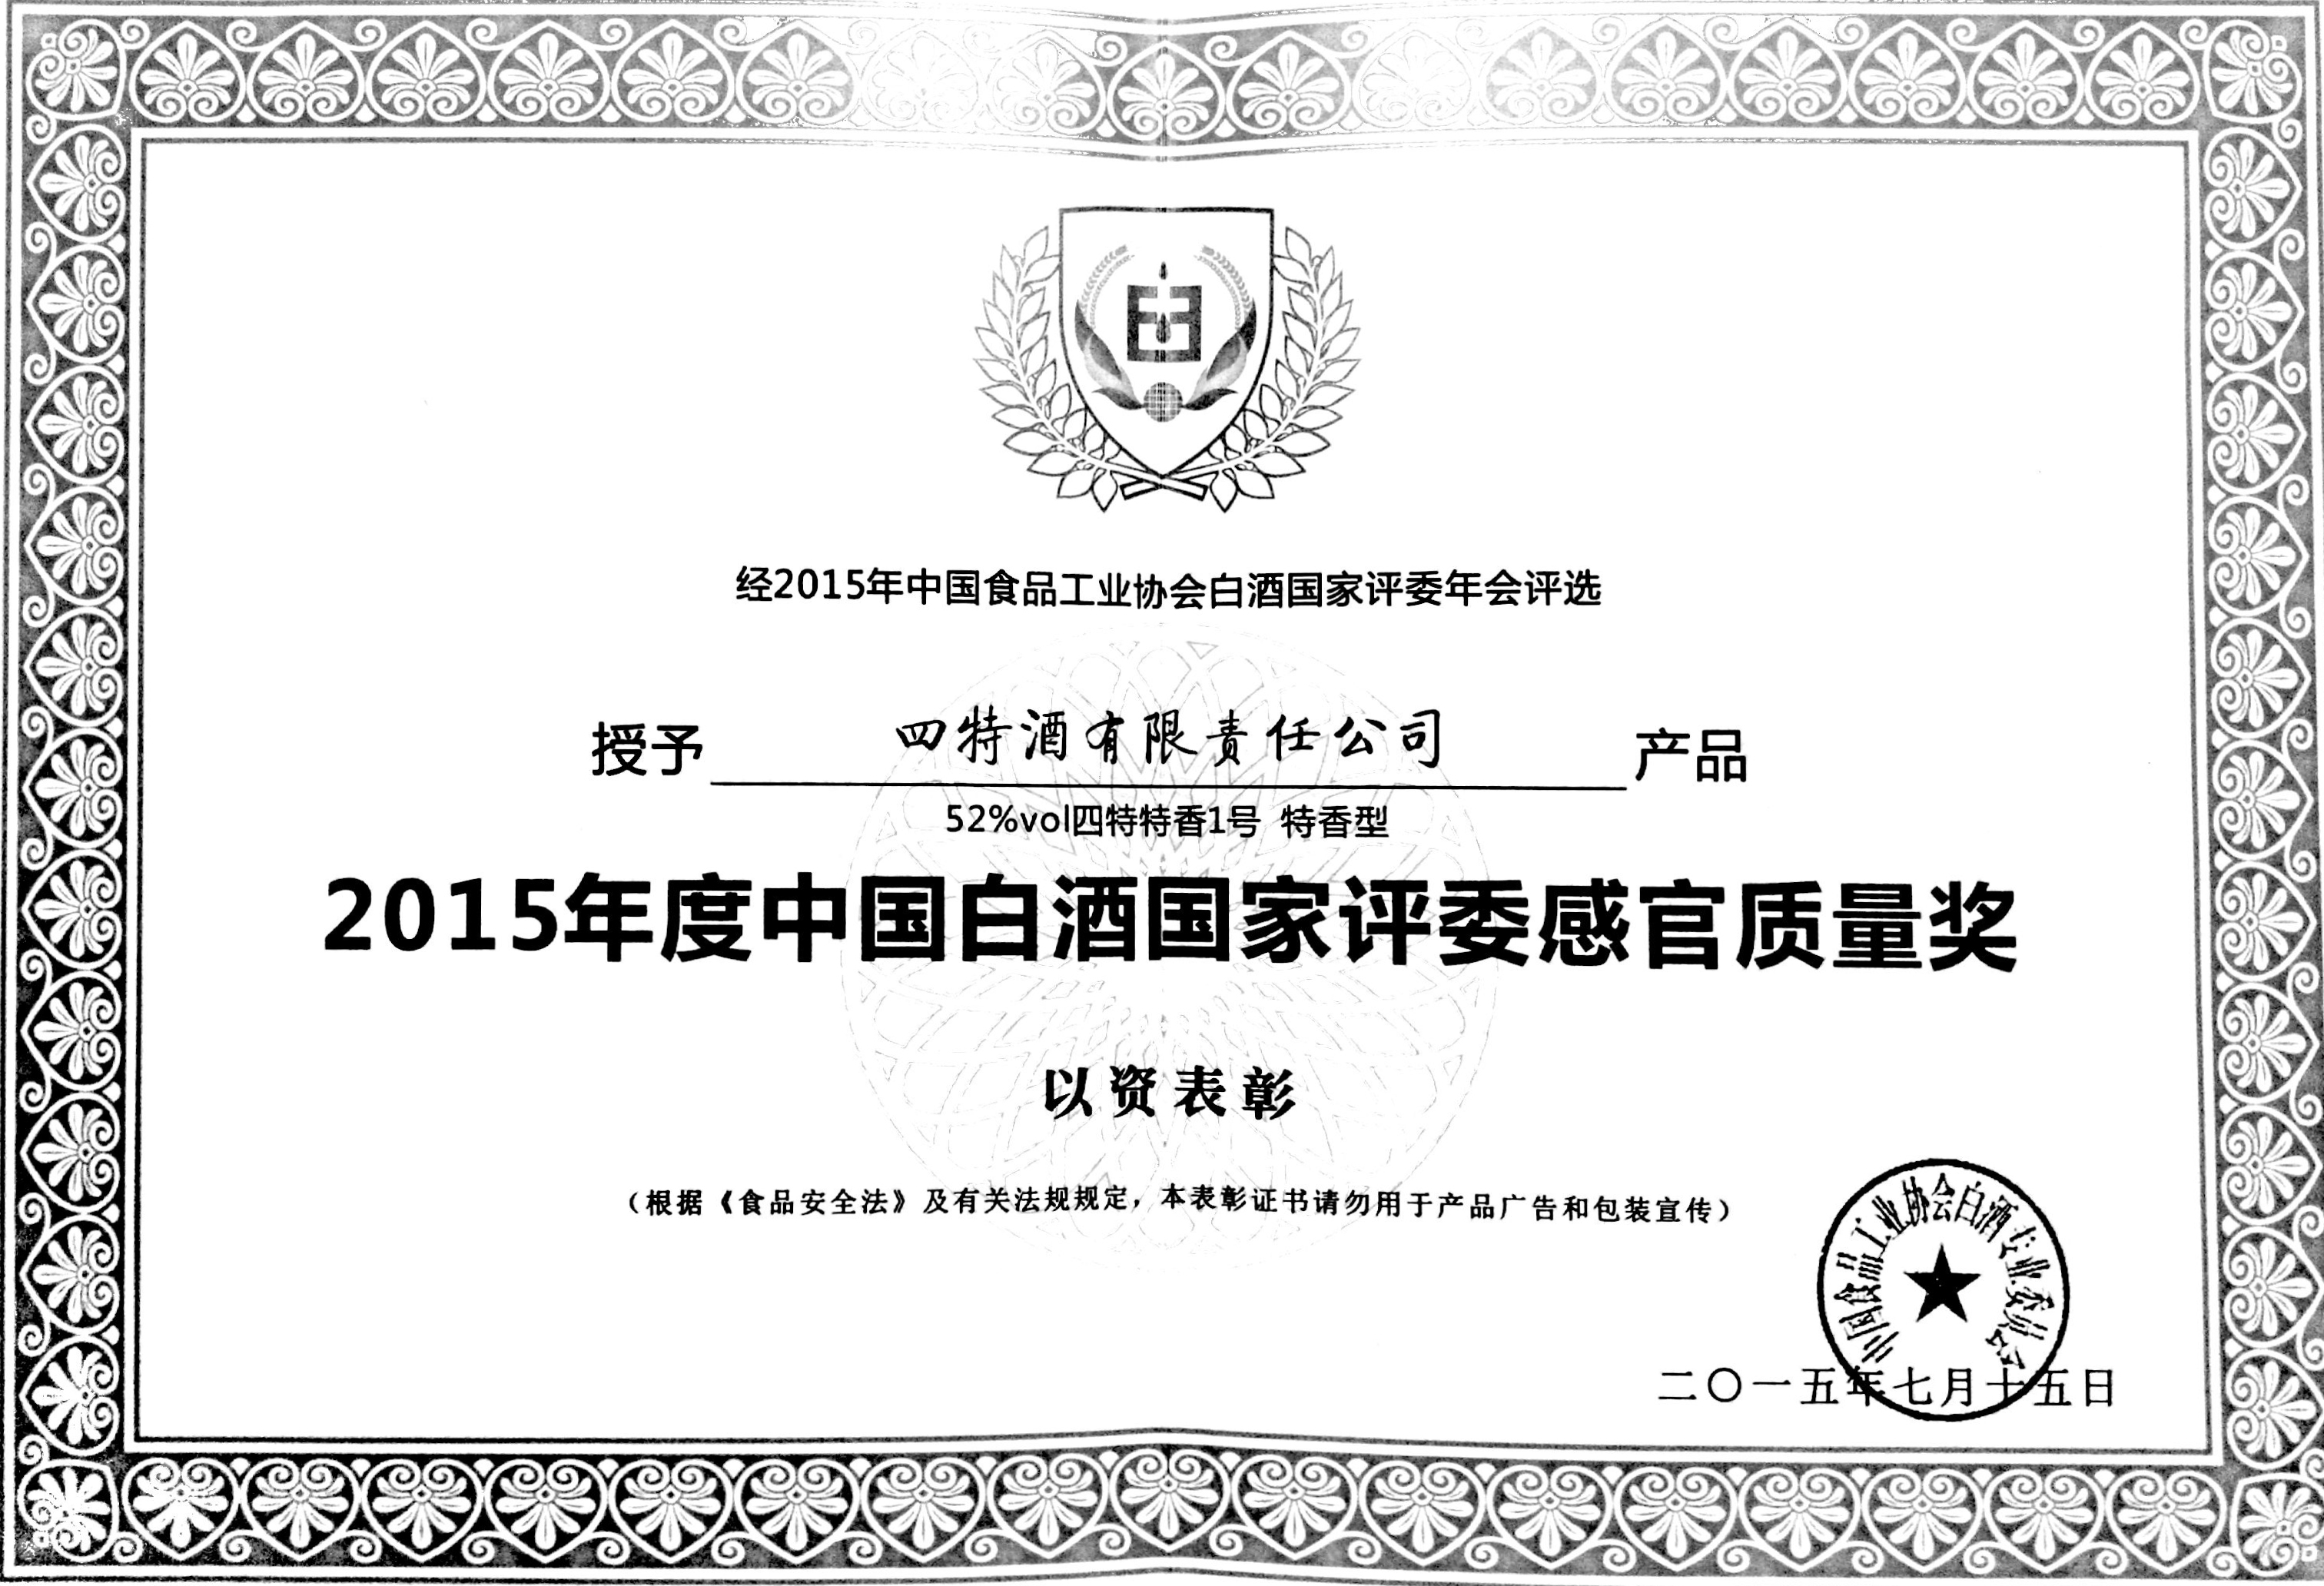 2015年度中国白酒国家评委感官质量奖